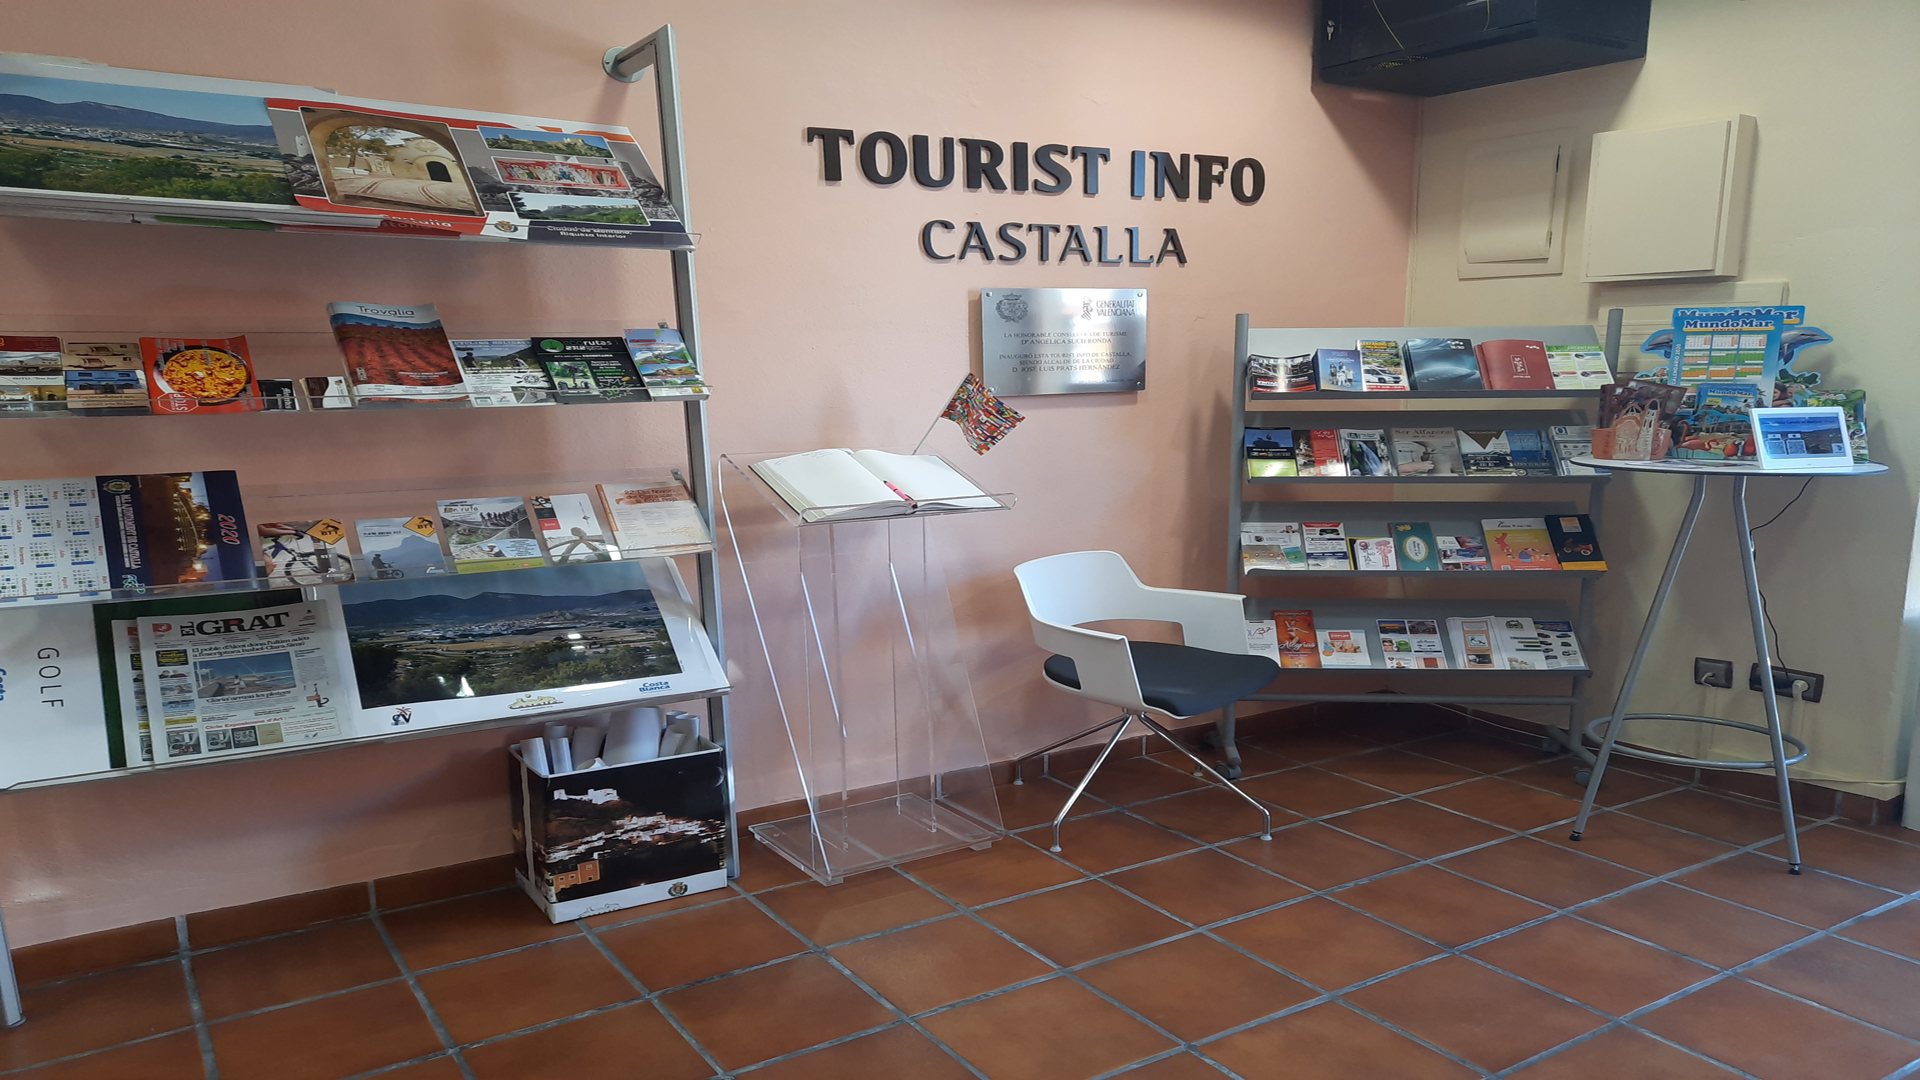 TOURIST INFO CASTALLA